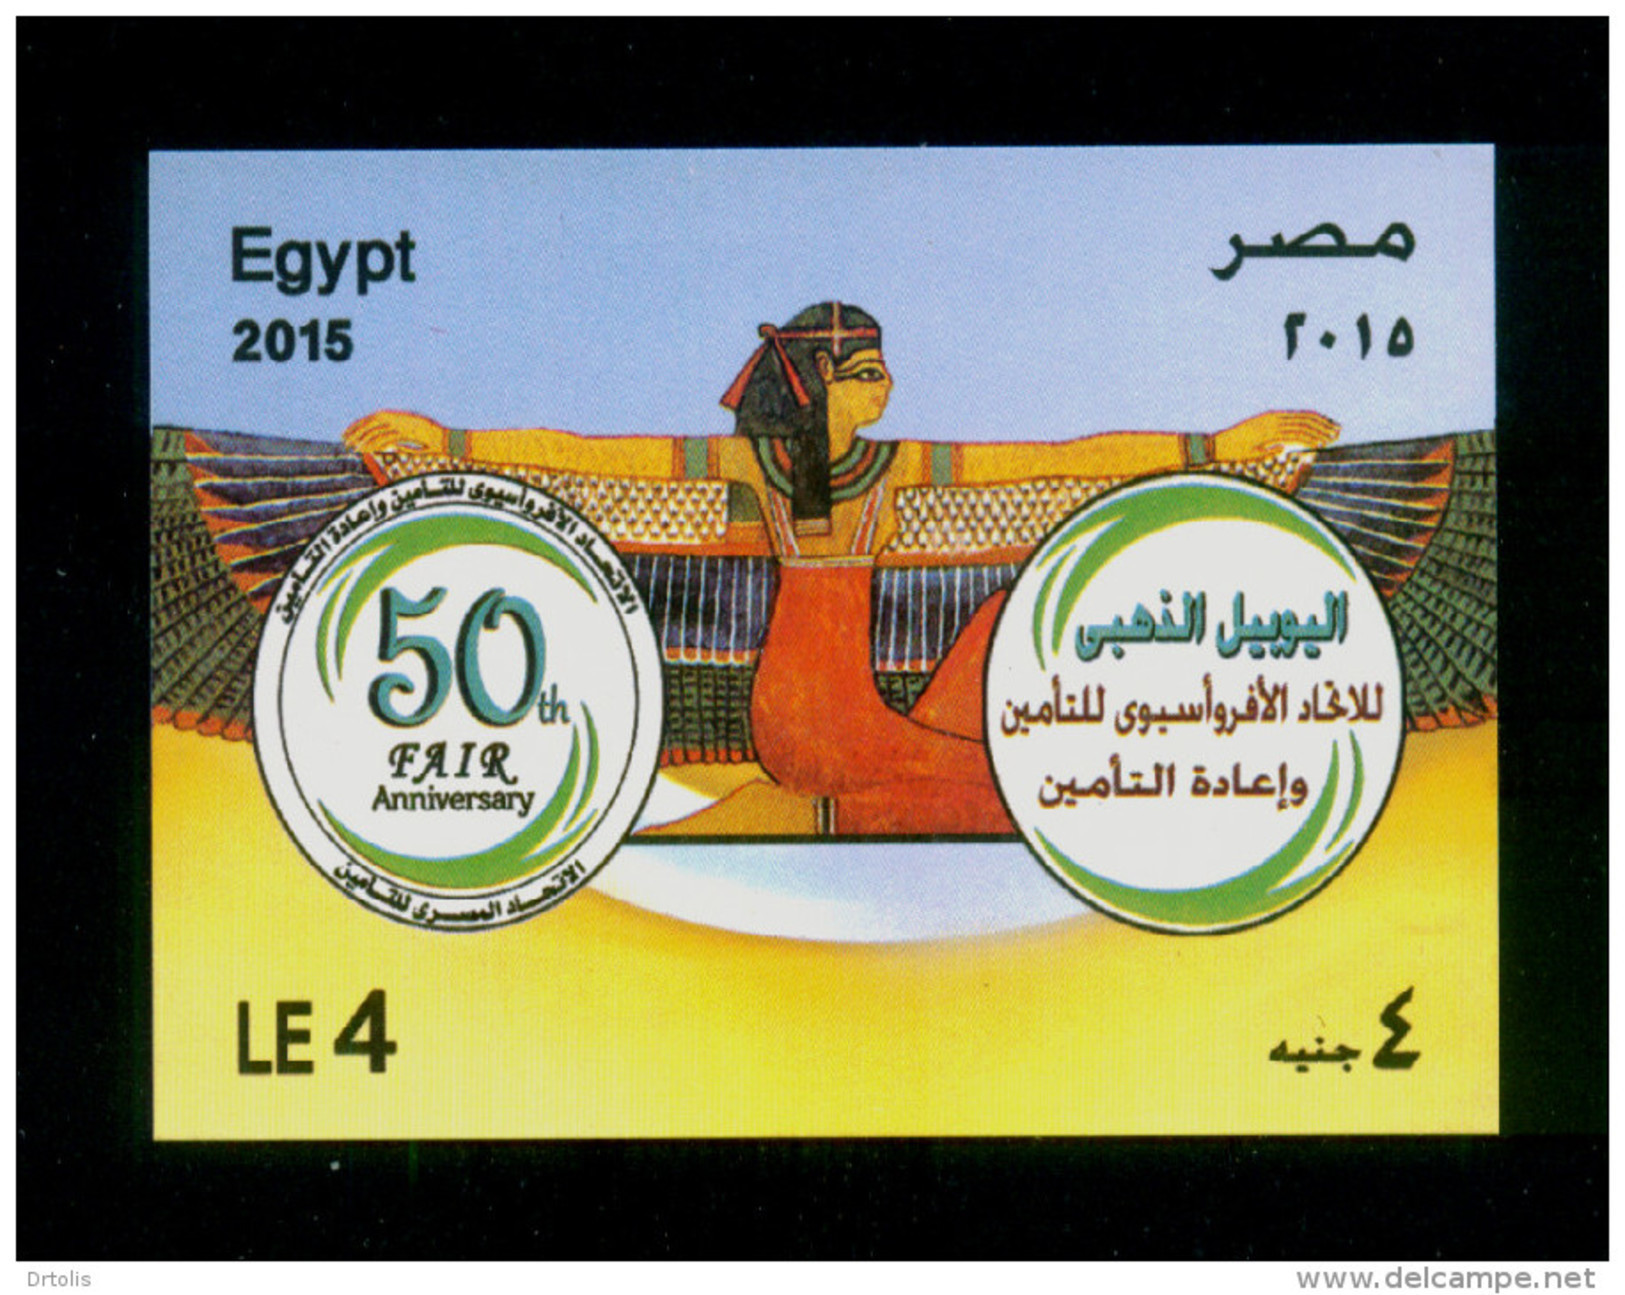 EGYPT / 2015 / GODDESS ISIS / EGYPTOLOGY / FAIR 50TH ANNIV. / IFE / INSURANCE / MNH / VF - Ongebruikt